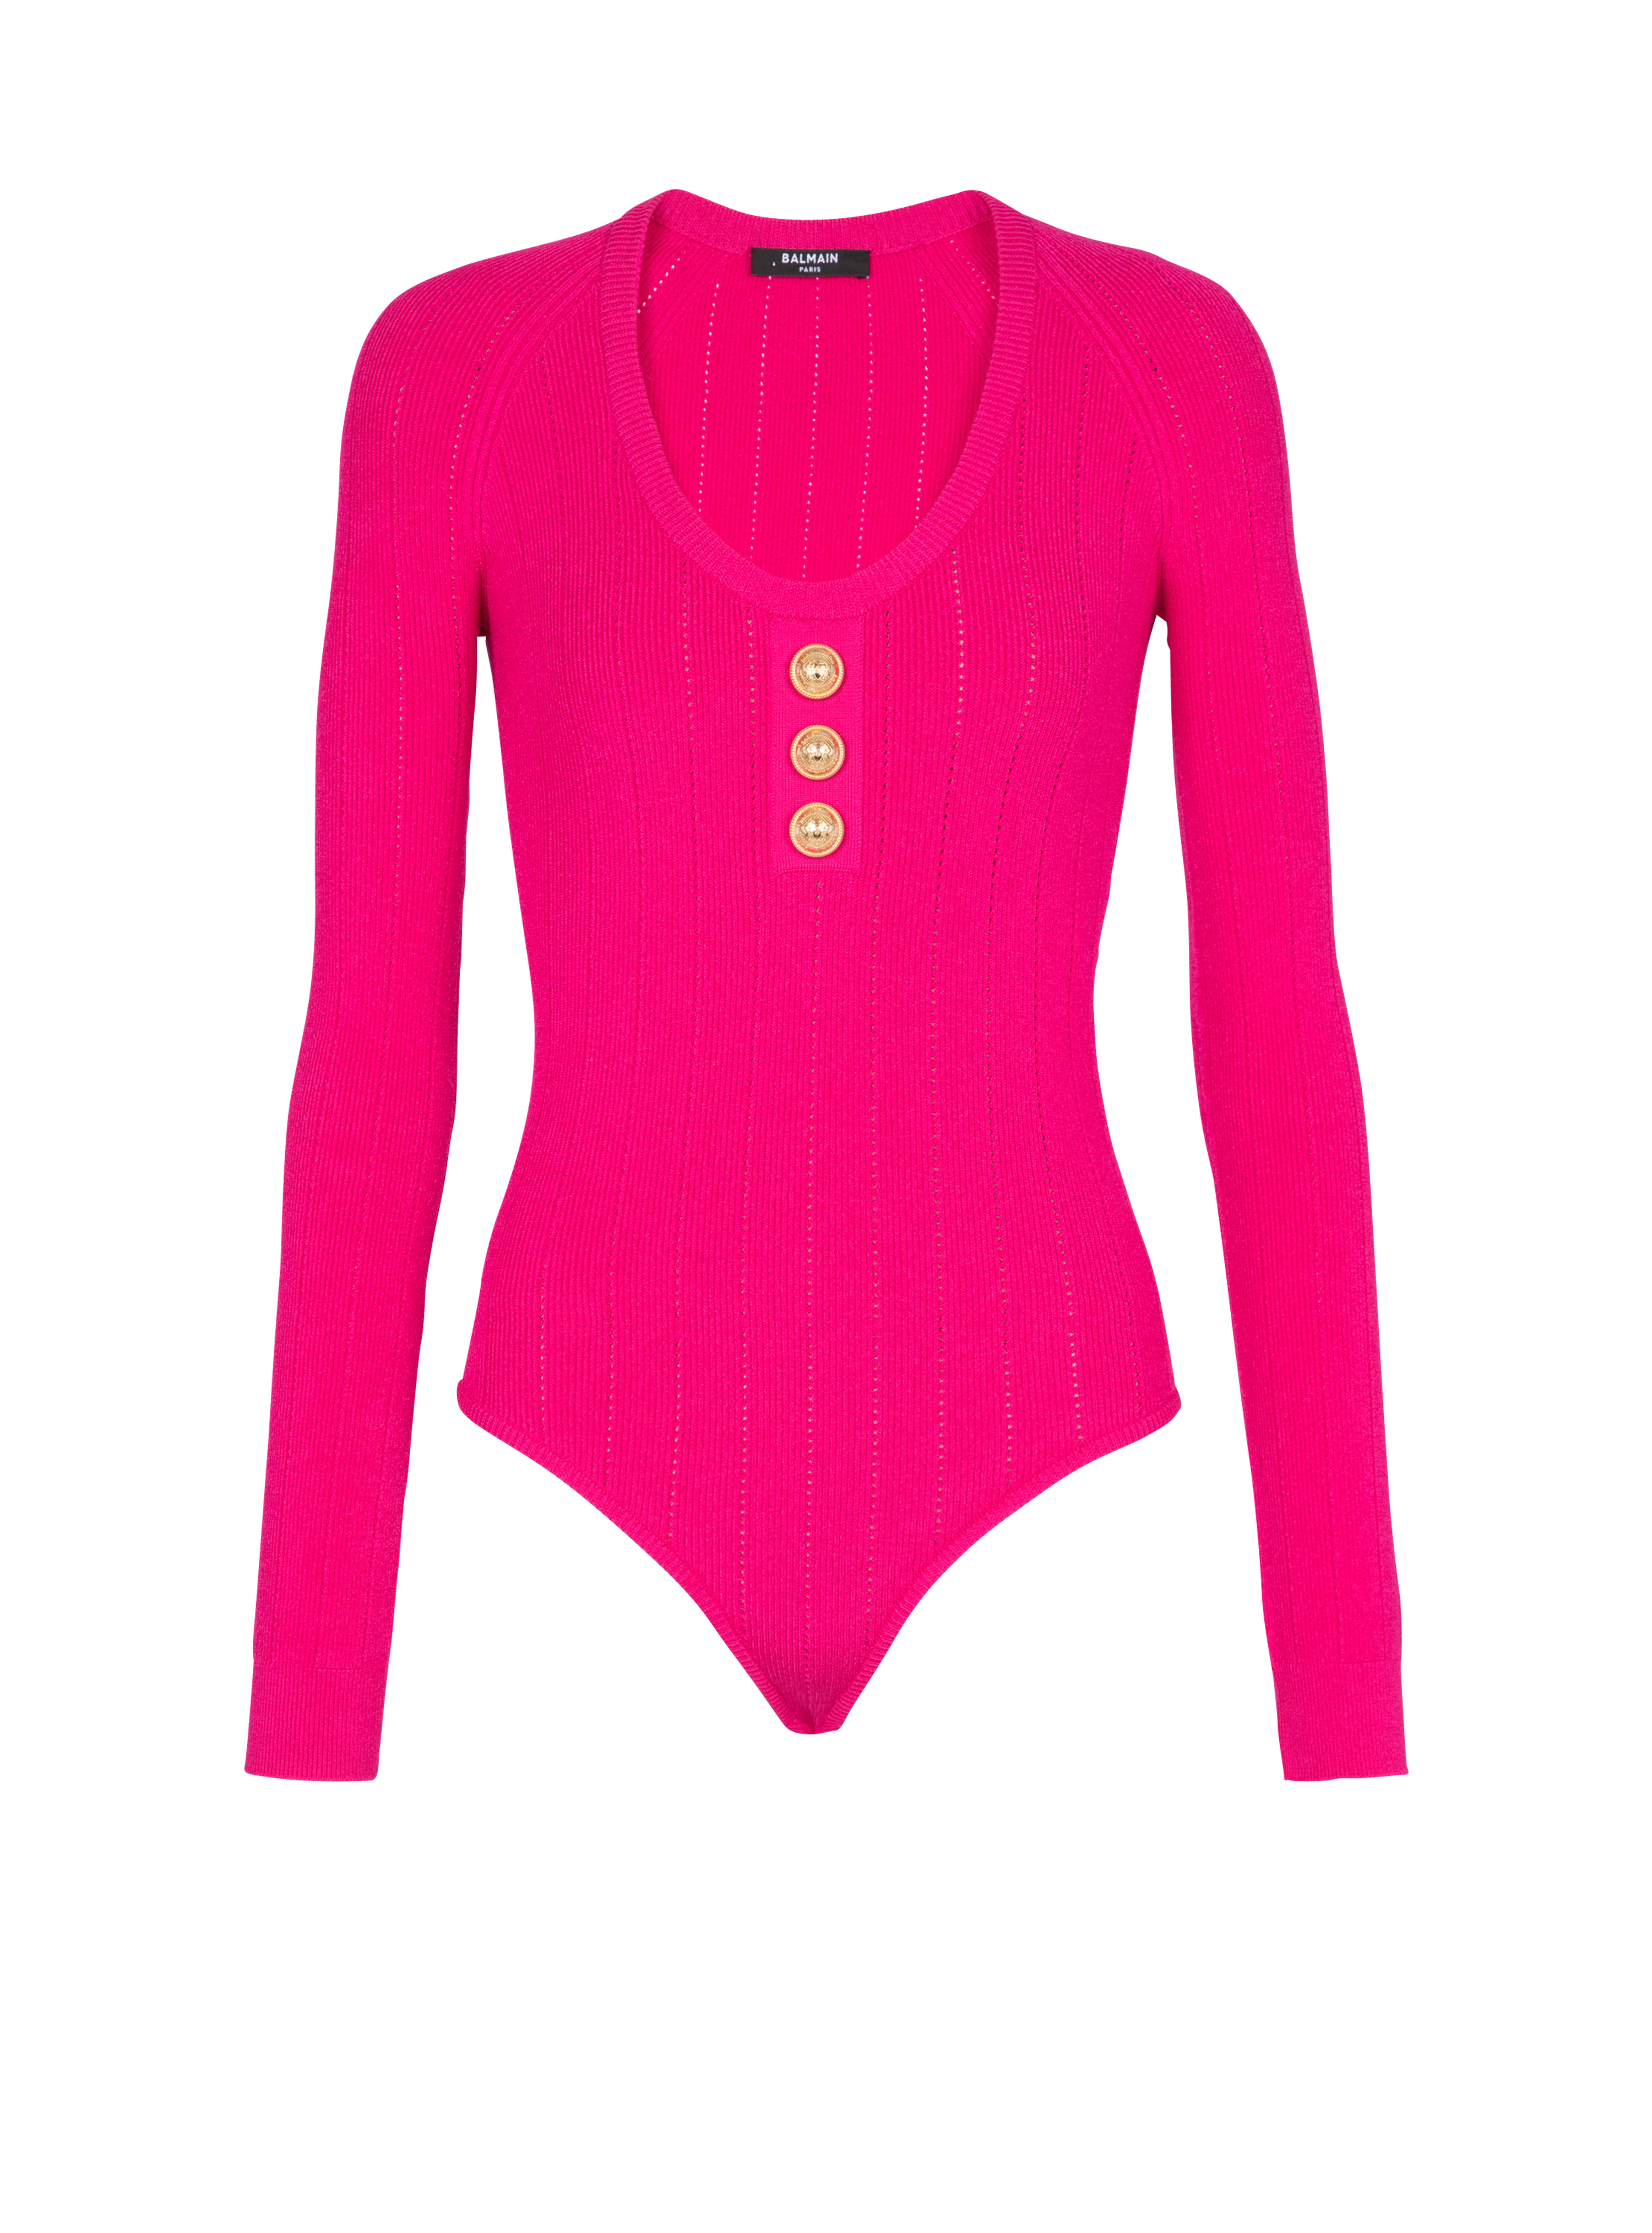 Knit bodysuit, pink